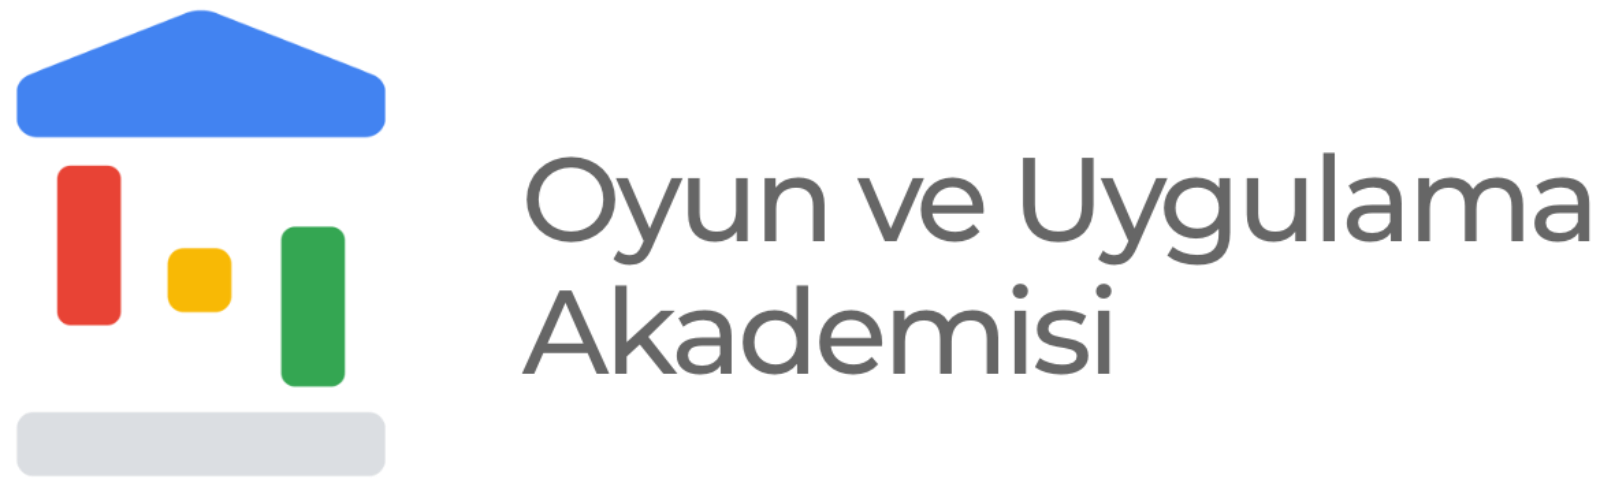 Oyun ve Uygulama Akademisi logo